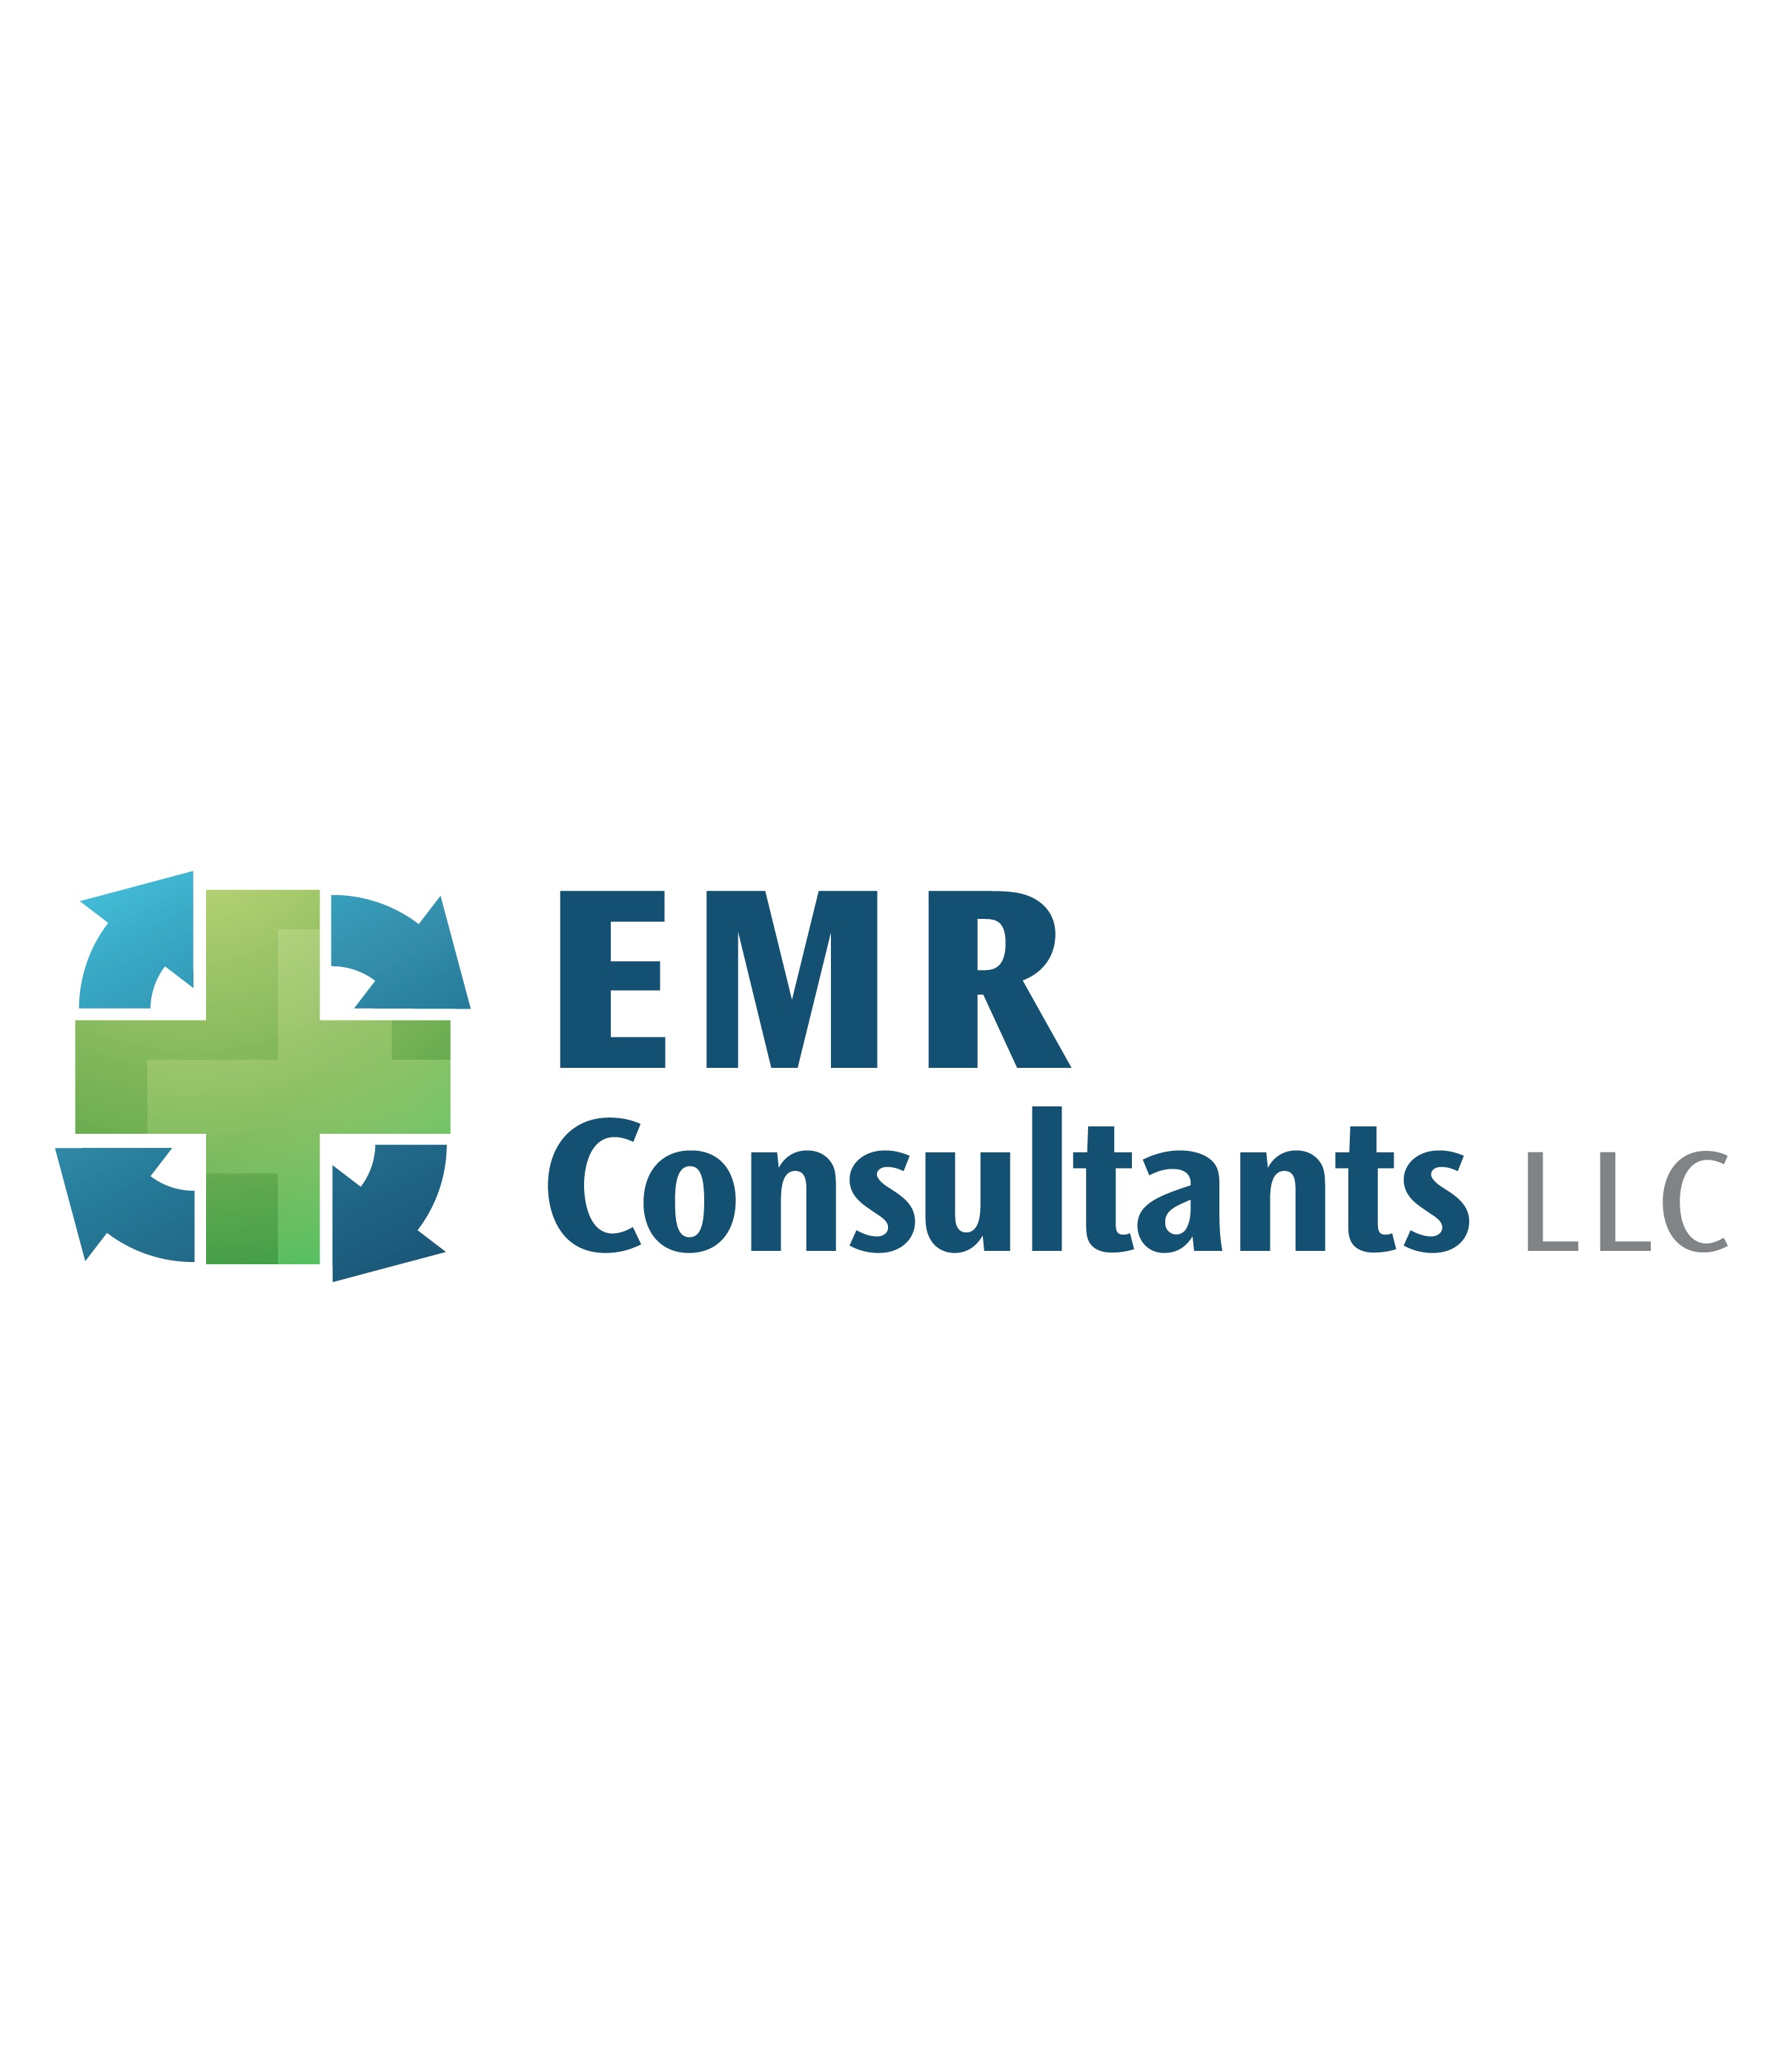 EMR Consultants